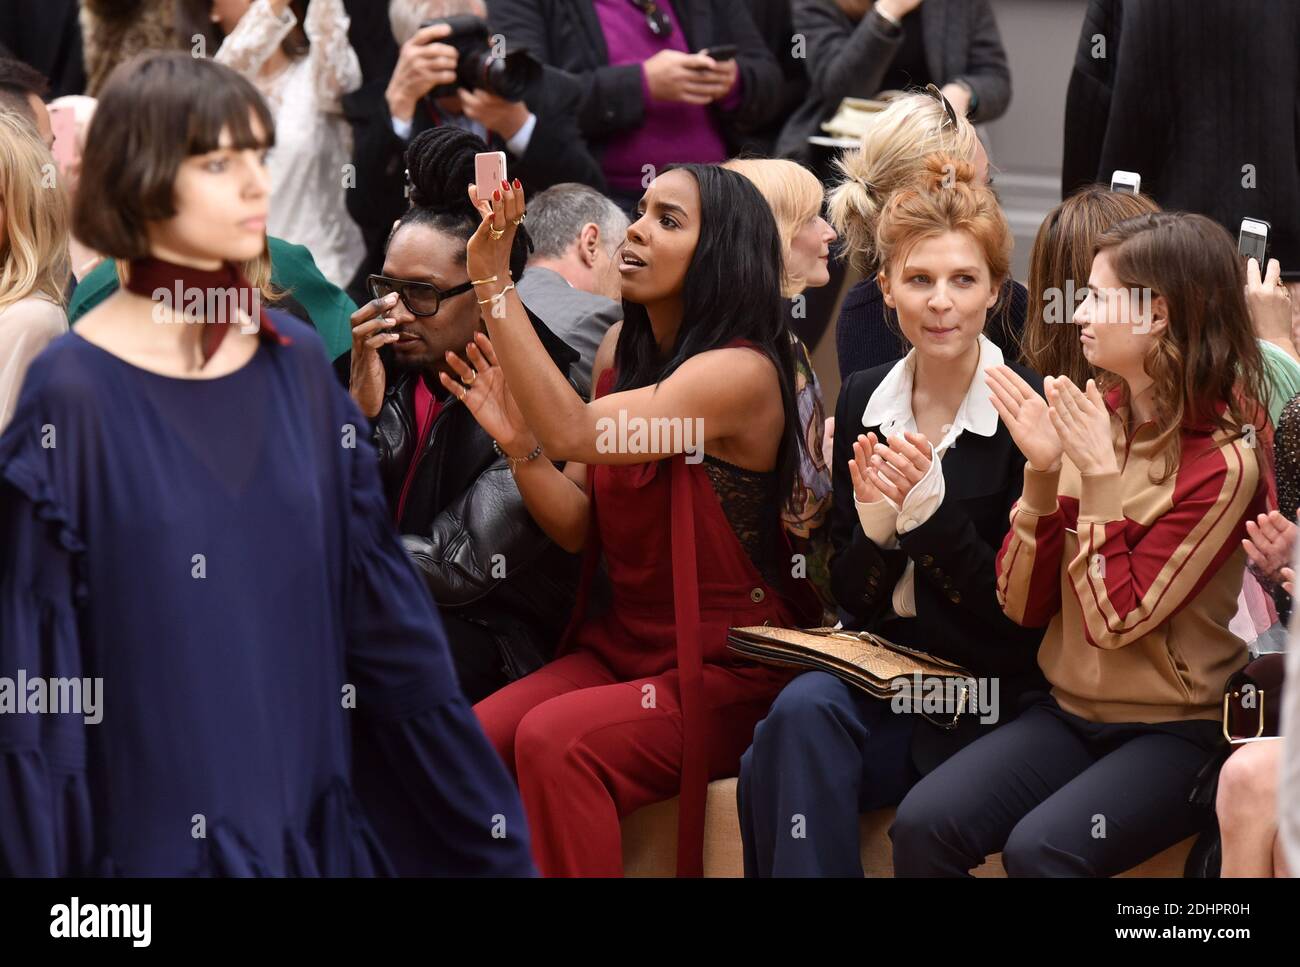 Kelly Rowland partecipa allo spettacolo Chloe nell'ambito della settimana della moda di Parigi, autunno/inverno 2016/17, al Grand Palais, il 3 marzo 2016 a Parigi, Francia. Foto di Laurent Zabulon/ABACAPRESS.COM Foto Stock